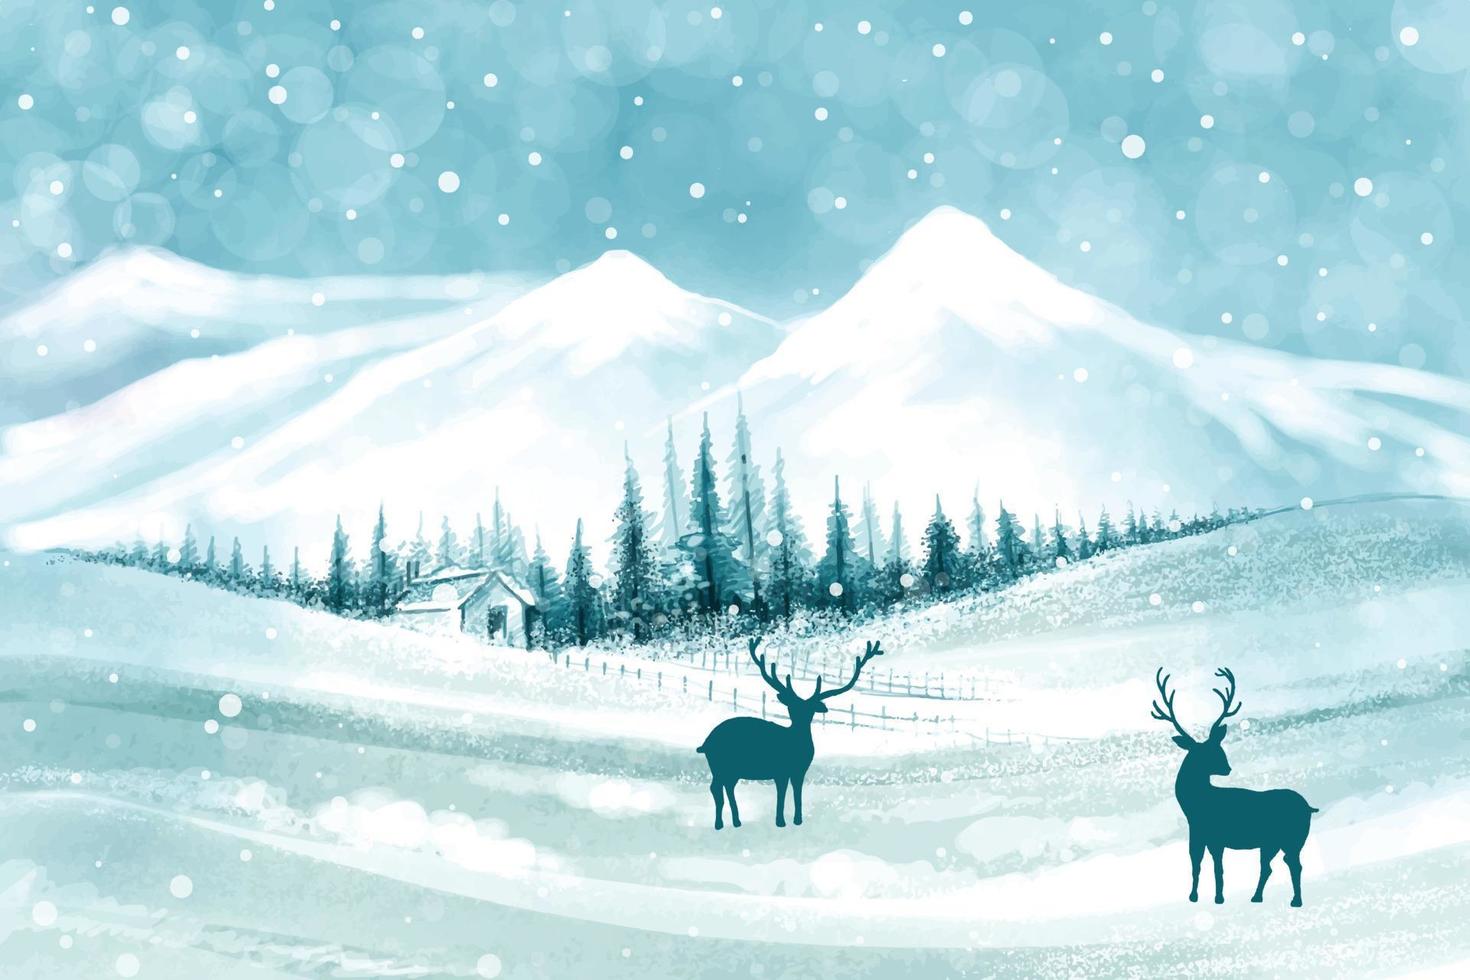 winter achtergrond van sneeuw en vorst Kerstmis boom kaart ontwerp vector